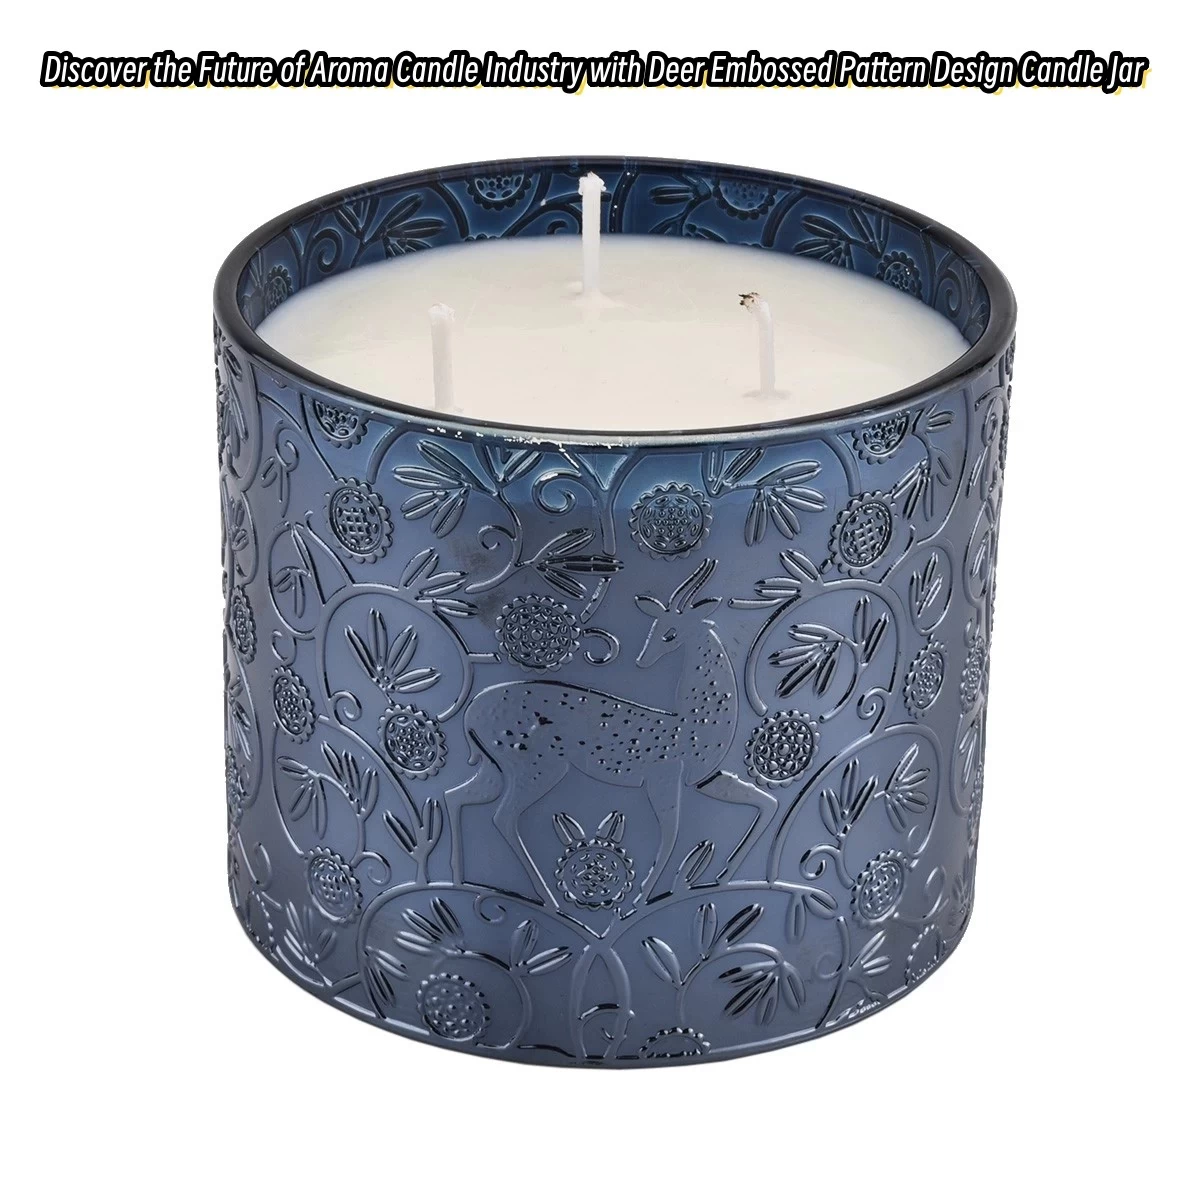 Tuklasin ang Kinabukasan ng Aroma Candle Industry na may Deer Embossed Pattern Design Candle Jar